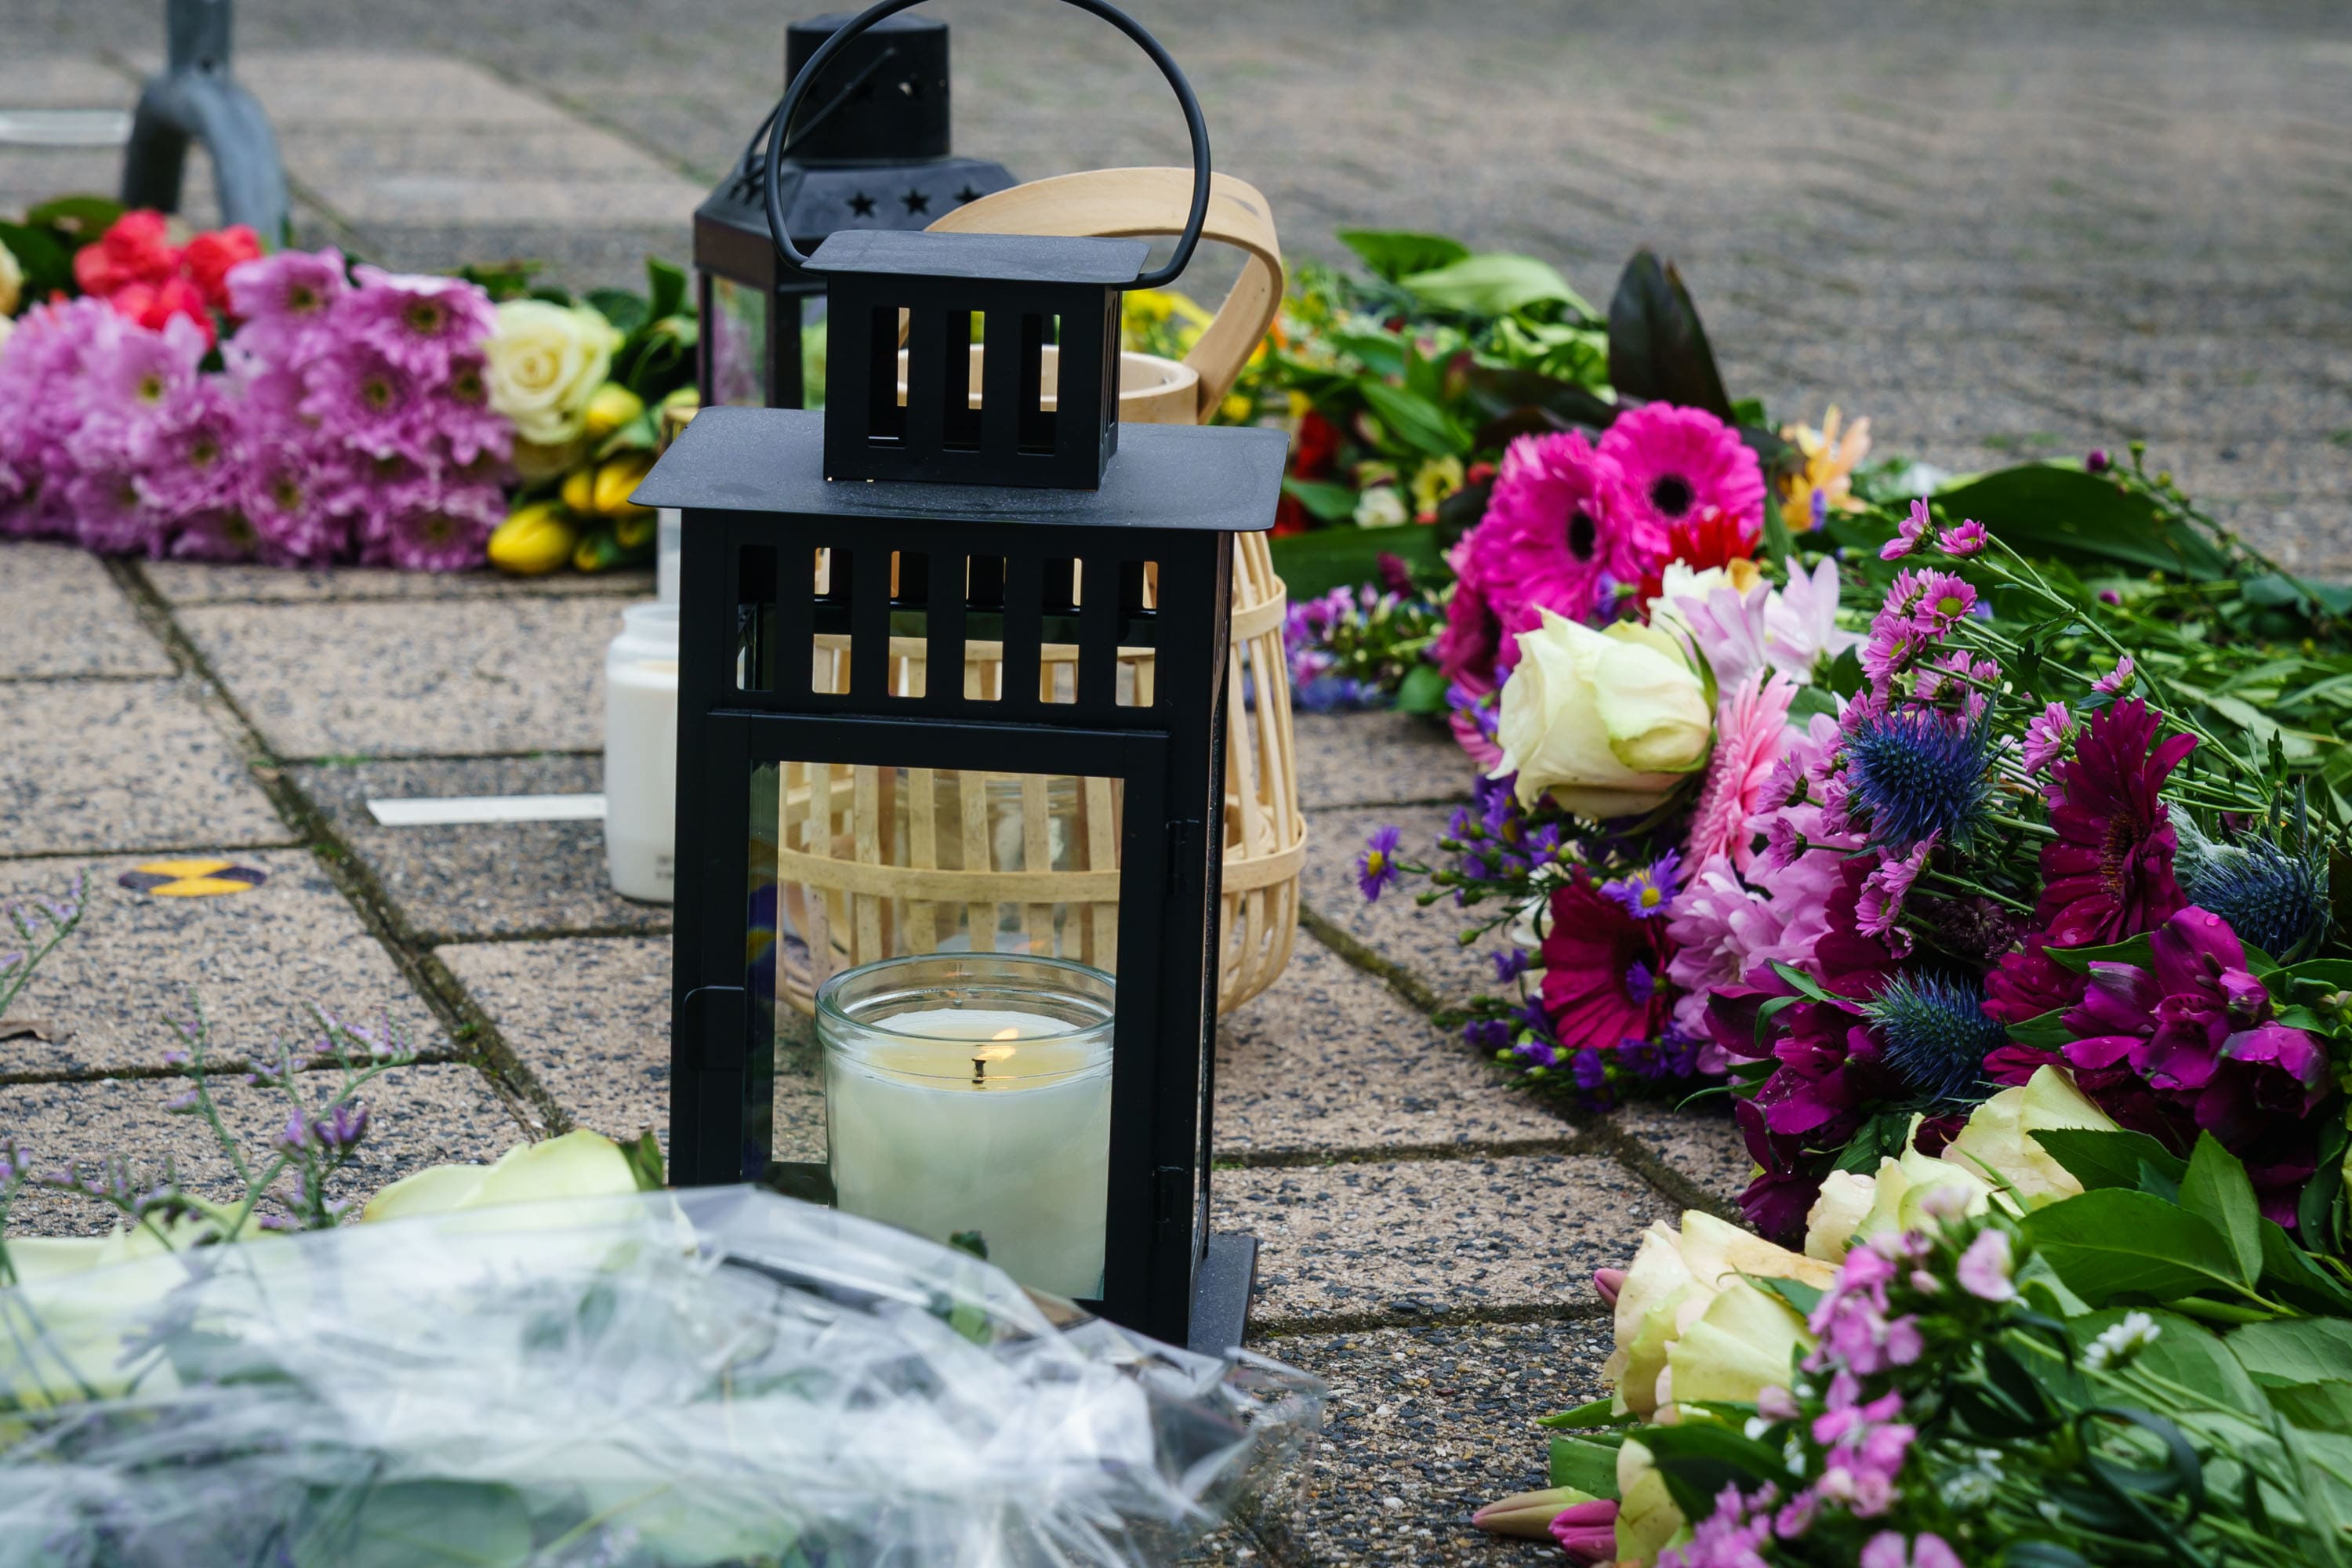 Bloemen op parkeerplaats Houten waar man werd doodgeschoten: 'Je zult gemist worden'